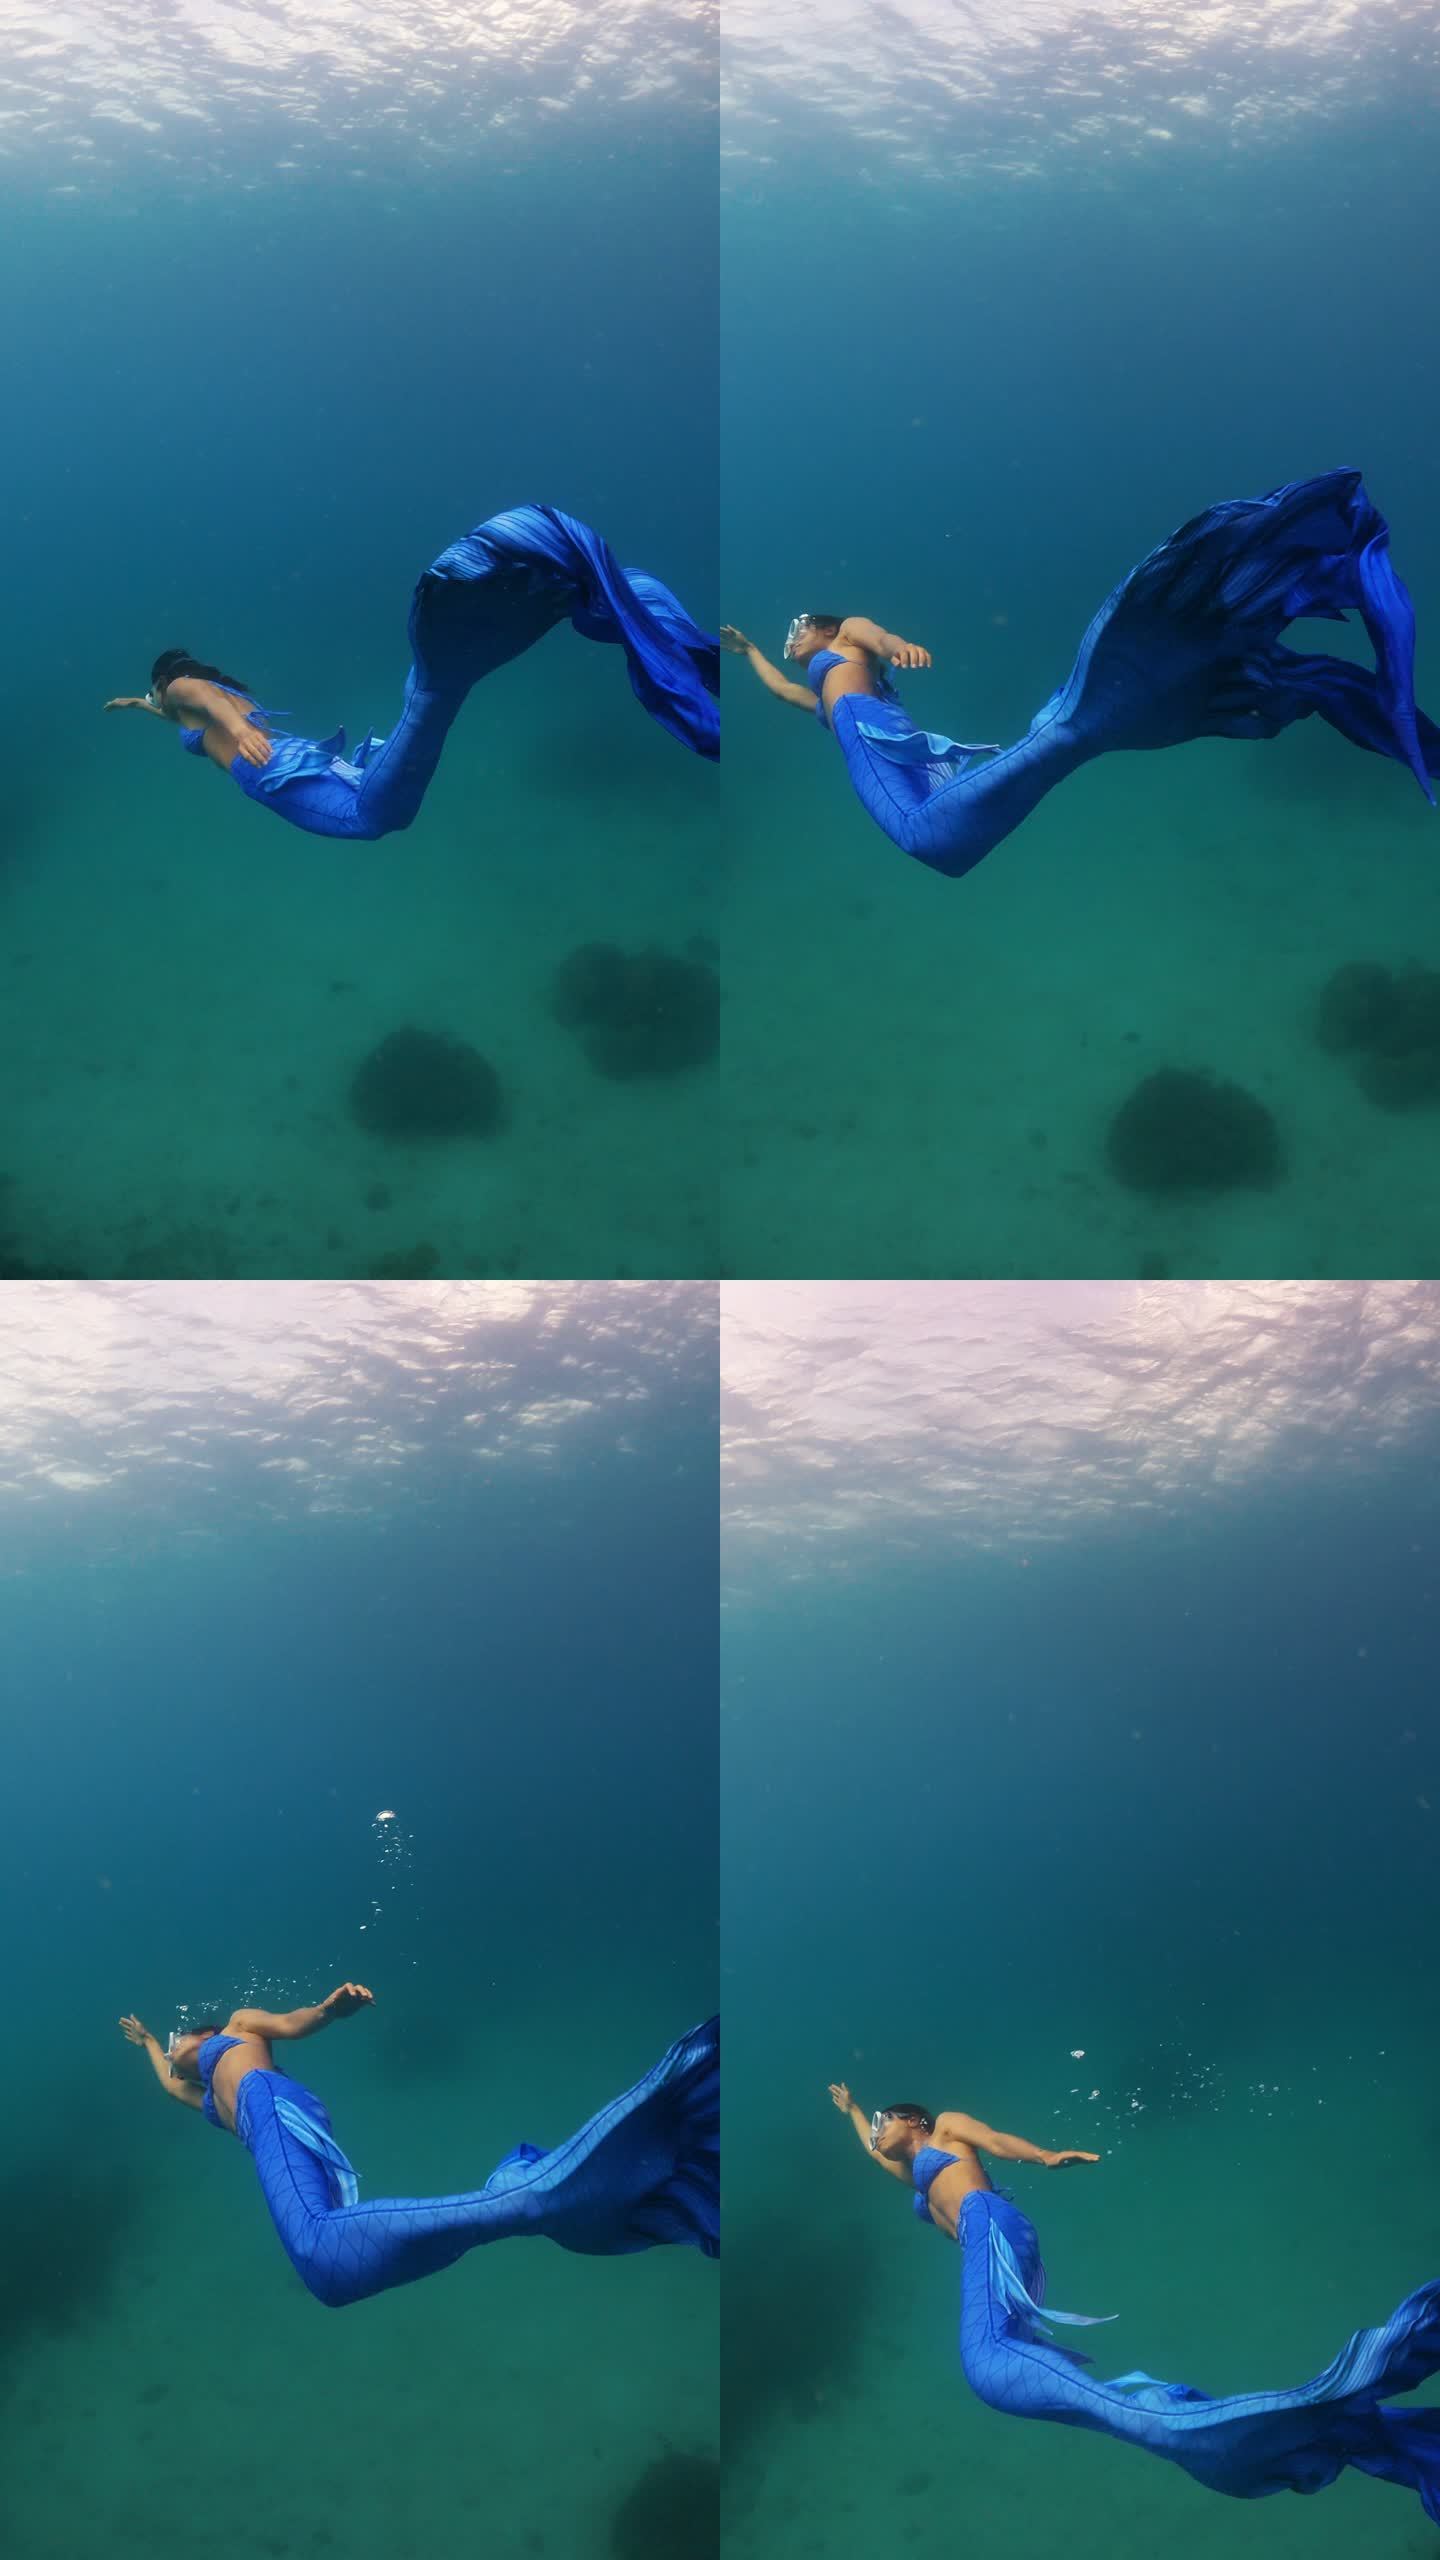 身穿美人鱼裙的亚洲女性在清澈的海水中潜水